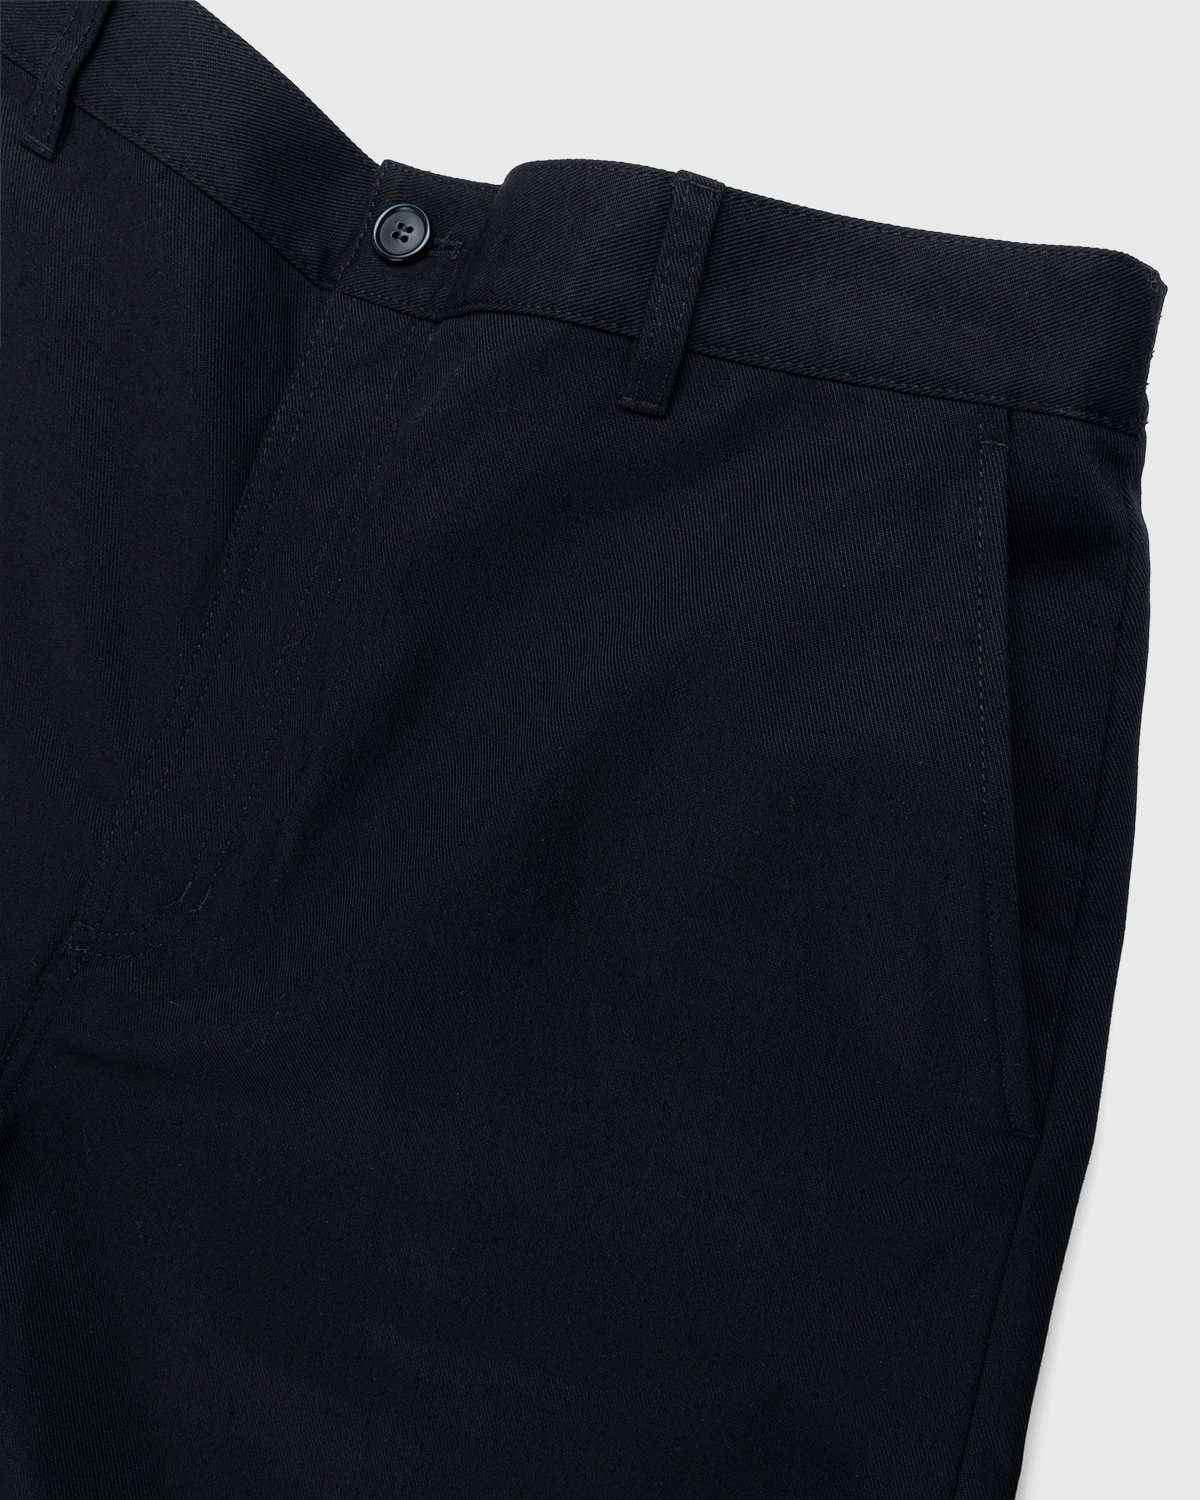 Acne Studios - Ringa Cotton Mix Twill Shorts Black - Clothing - Black - Image 4